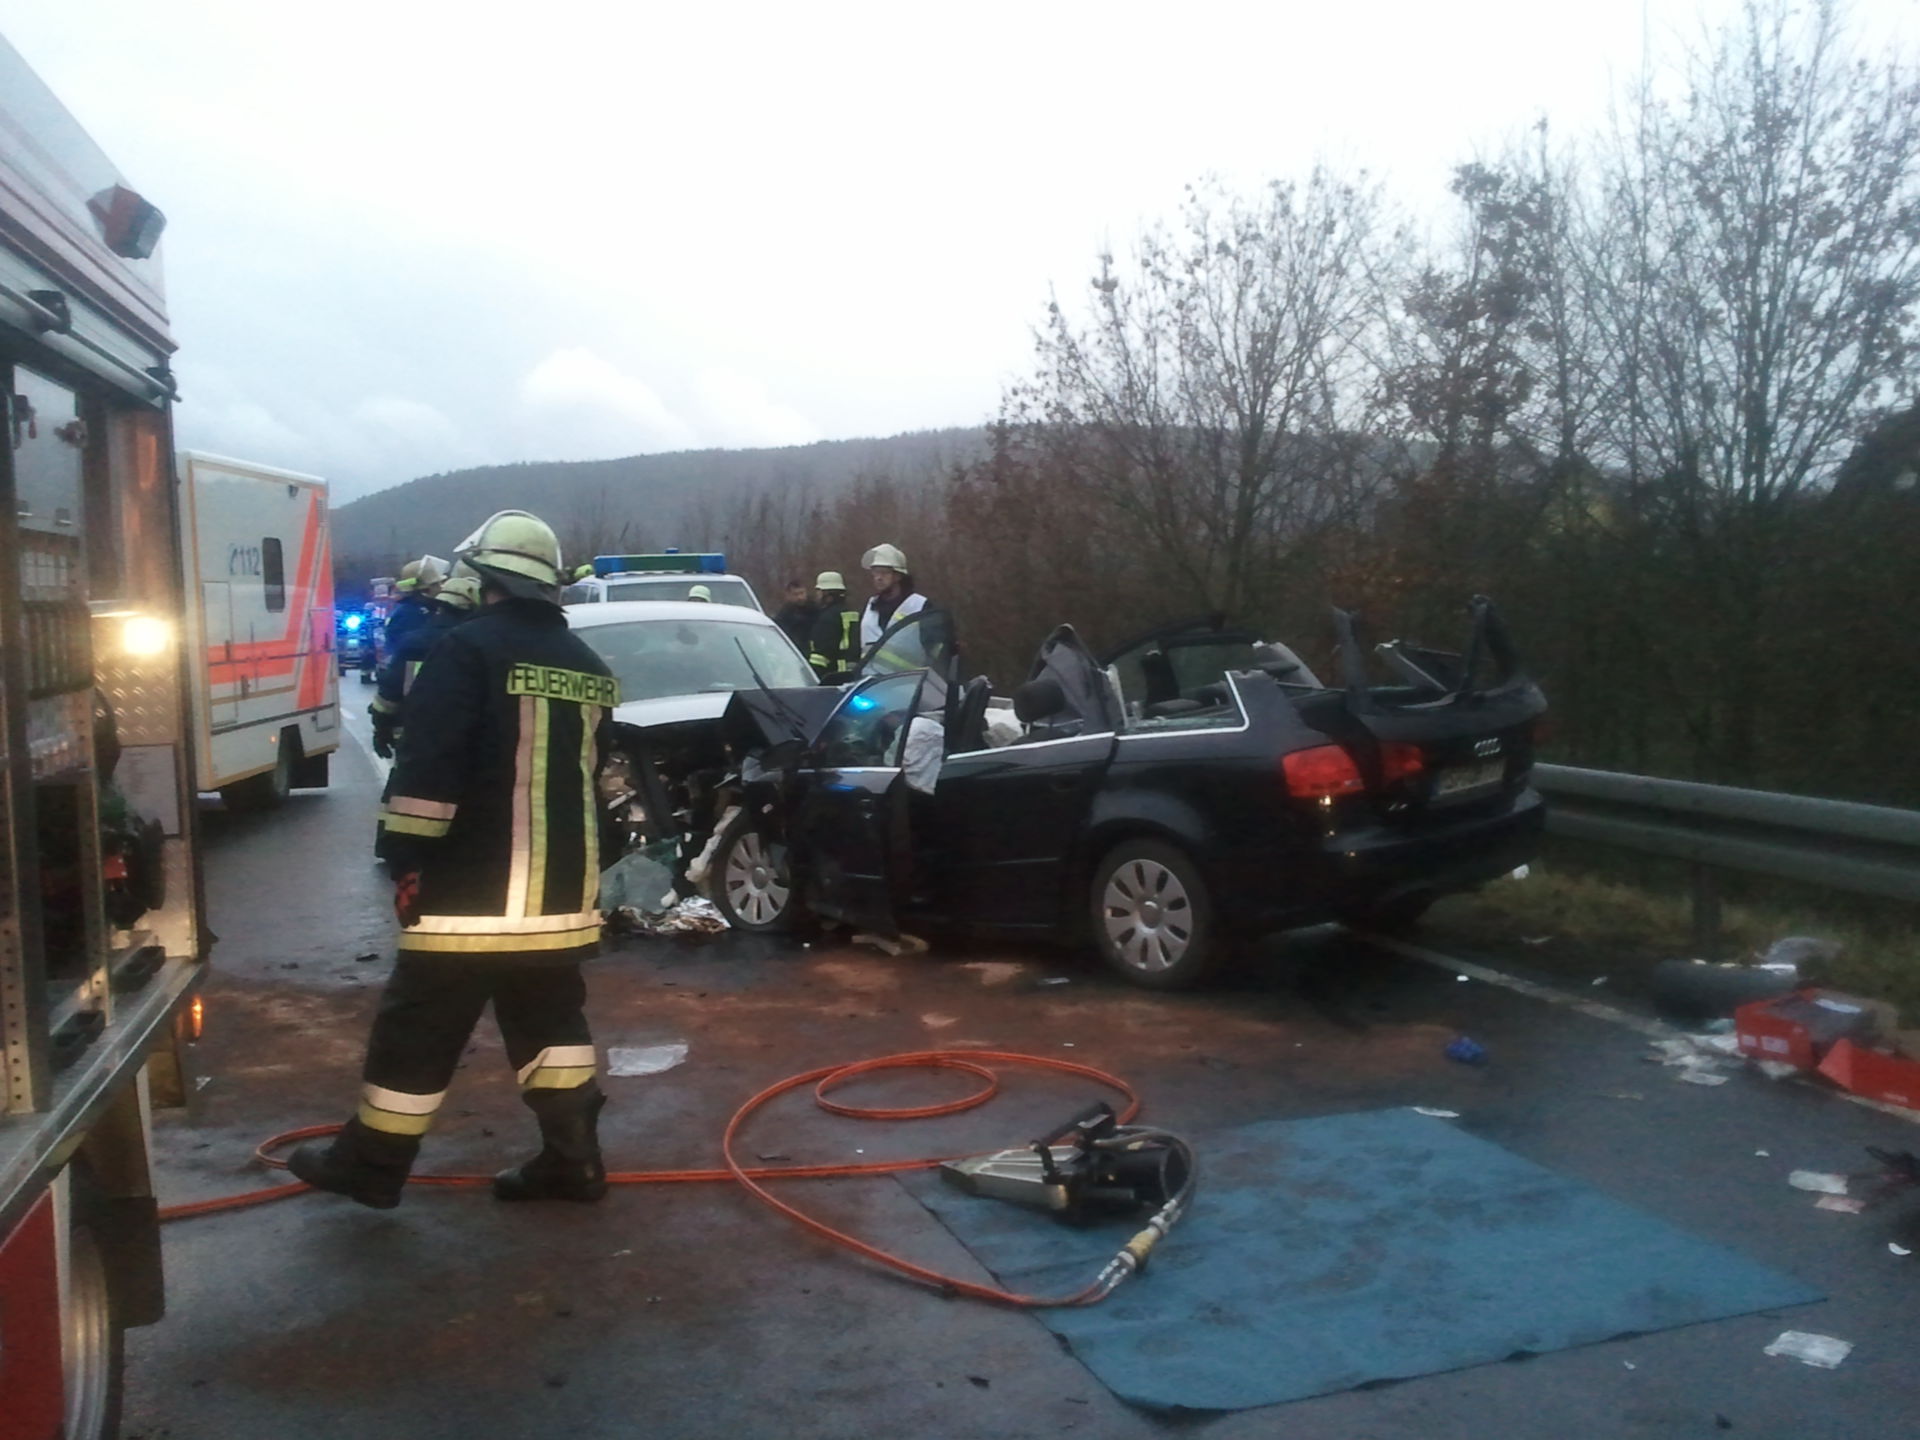 Emergency medical care at Spessart, 4 severely injured, 1 dead